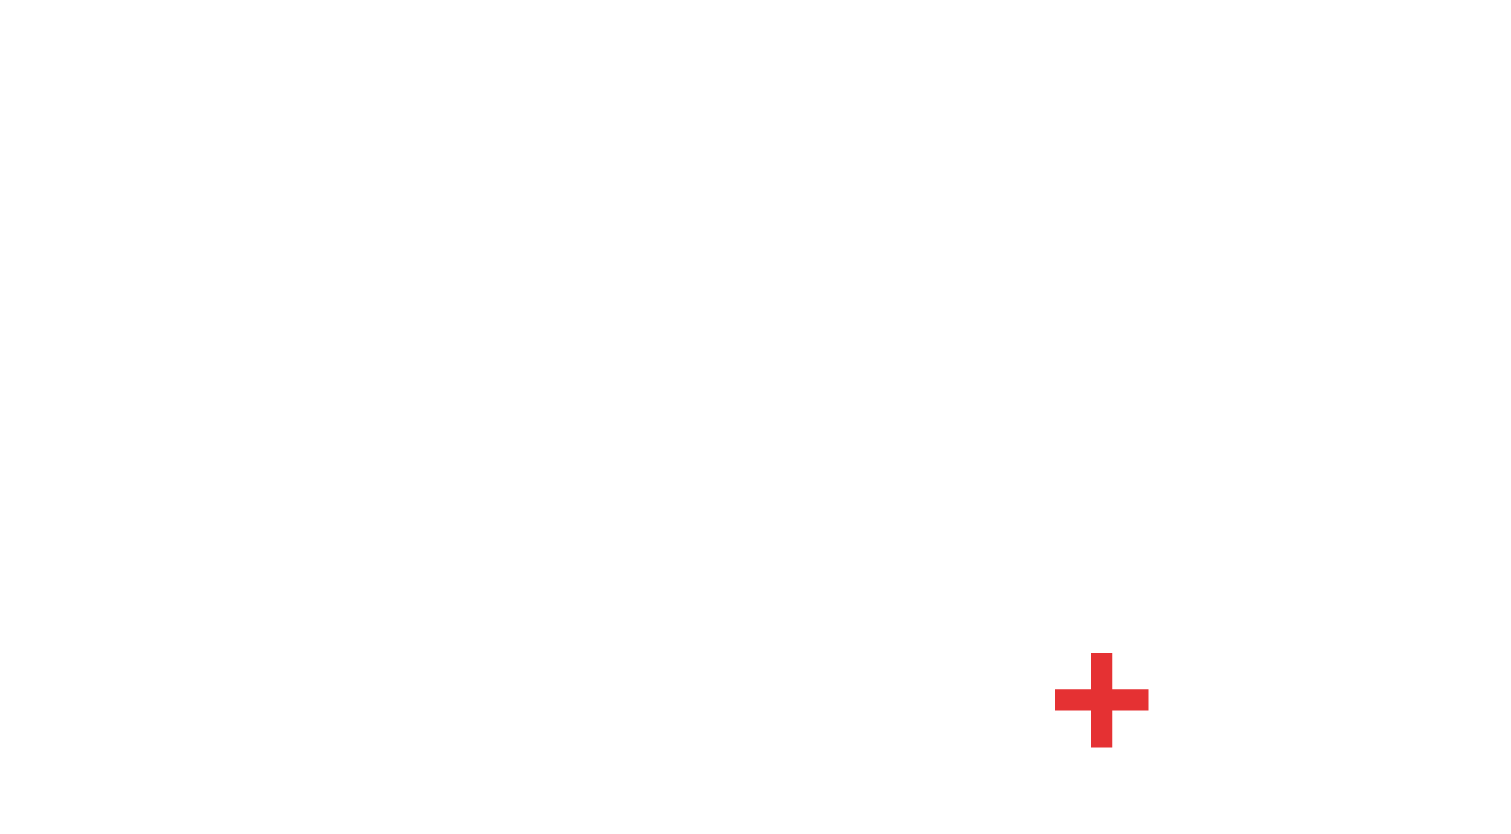 KGD Agency